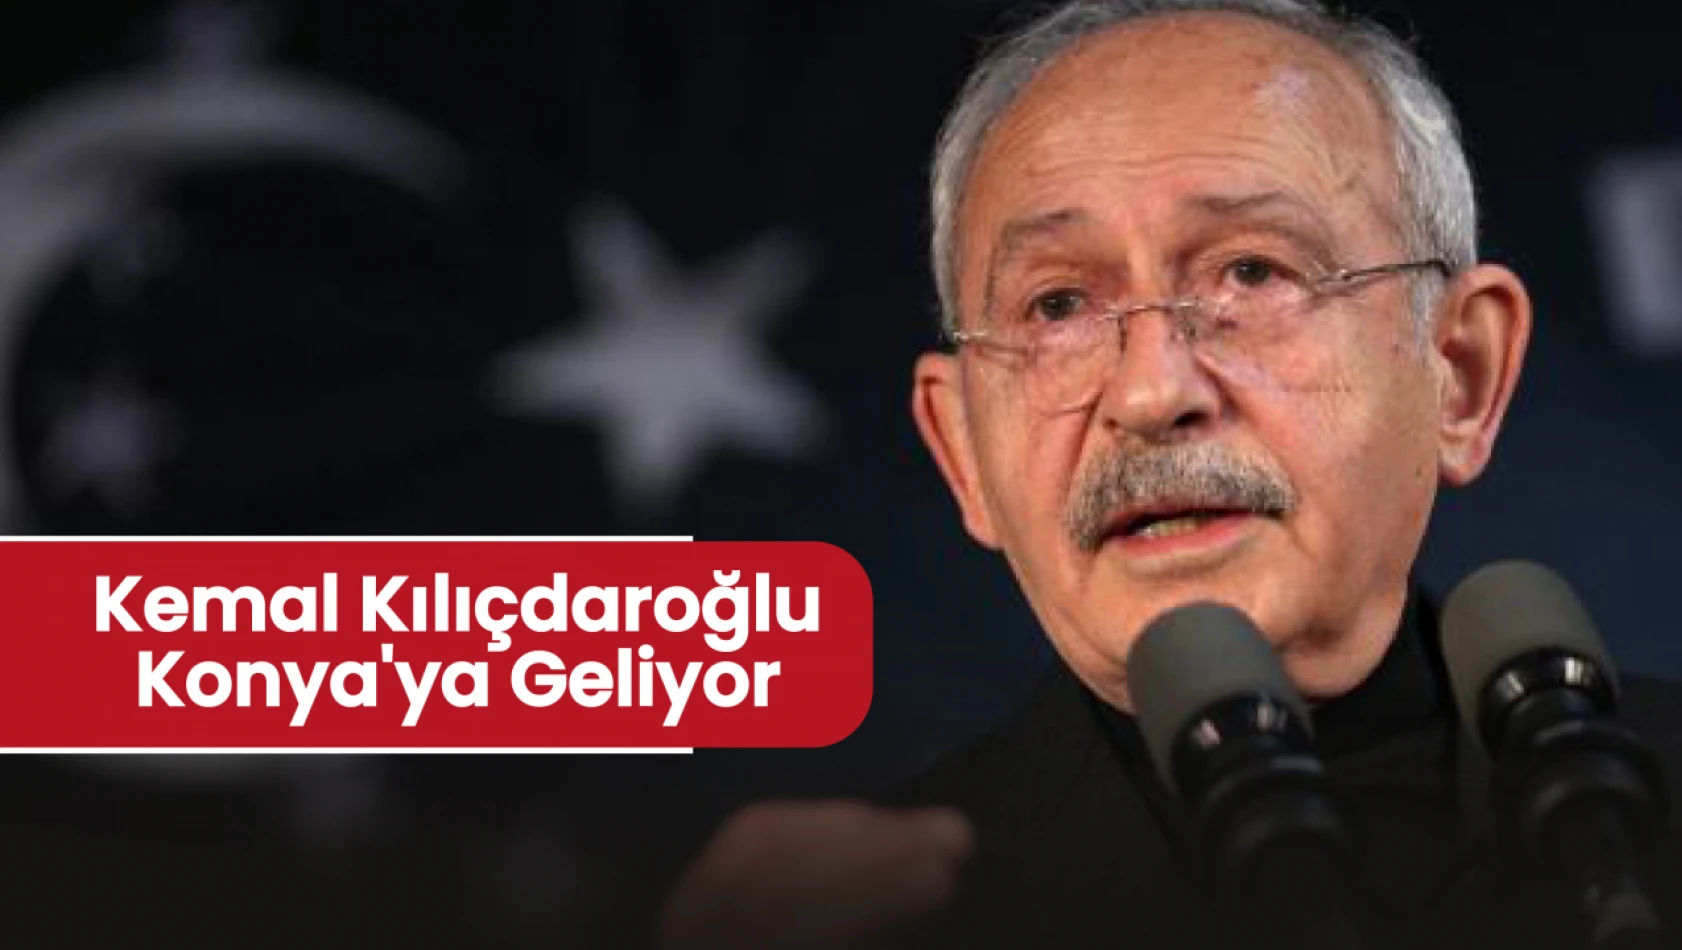 Kemal Kılıçdaroğlu Konya'da Toplantı Düzenleyecek